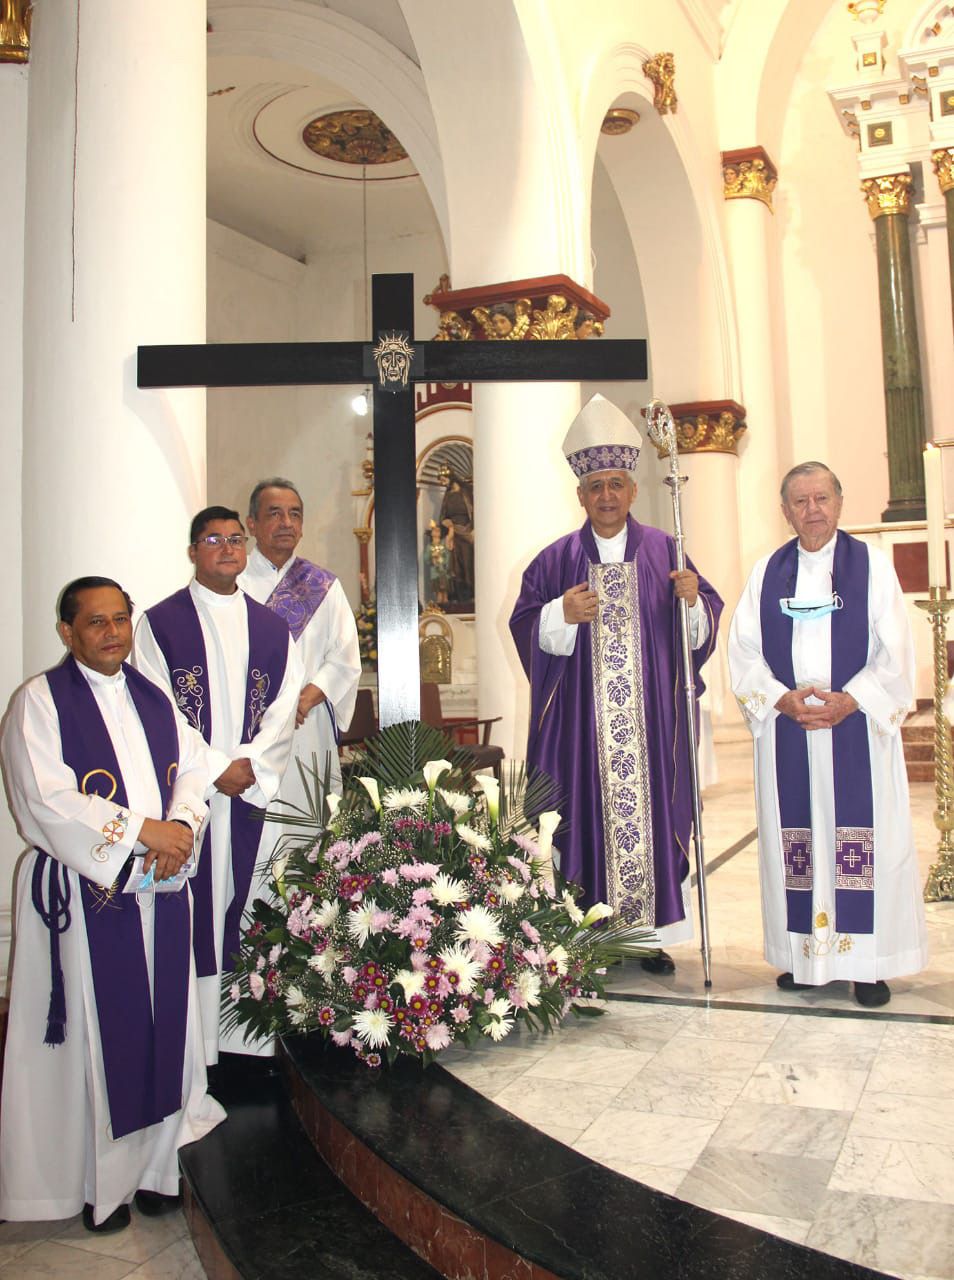 Erzbischof Orlando Roa Barbosa und Konzelebranten unter einer Replik des Aachener Friedenskreuzes in der Kathedrale von bei der Aussendung des diözesanen Pilgerweges mit dem Aachener Friedenskreuz.